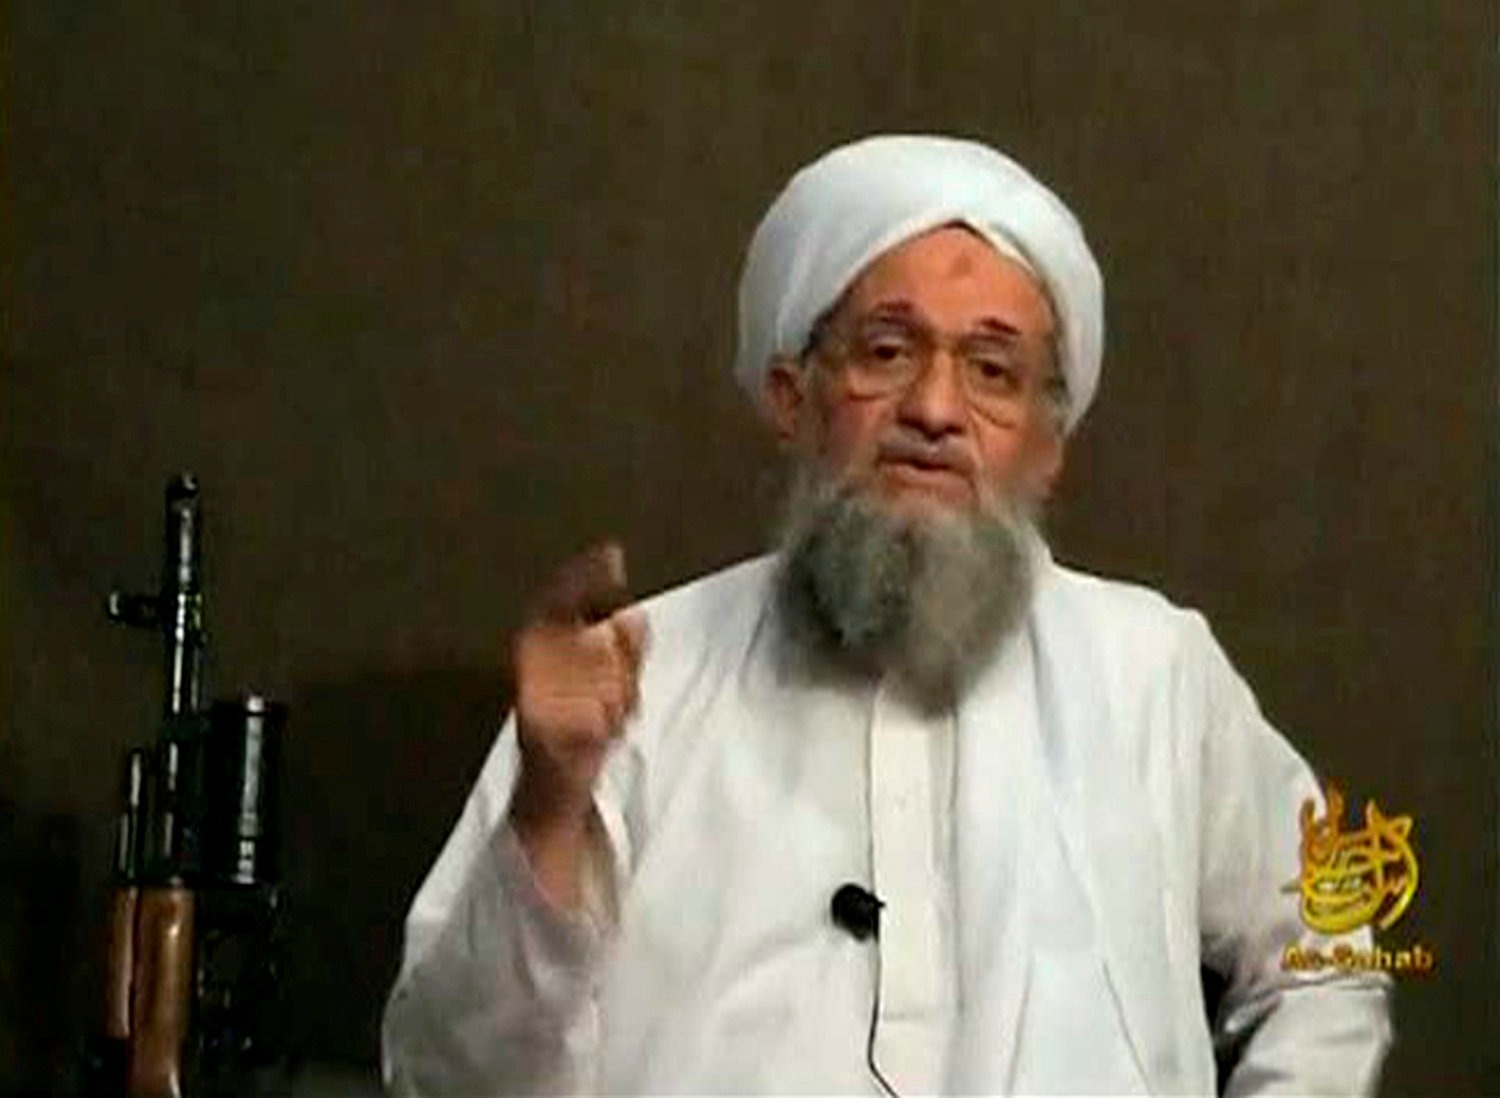 El líder de Al Qaeda insta a secuestrar occidentales para intercambiarlos por presos musulmanes